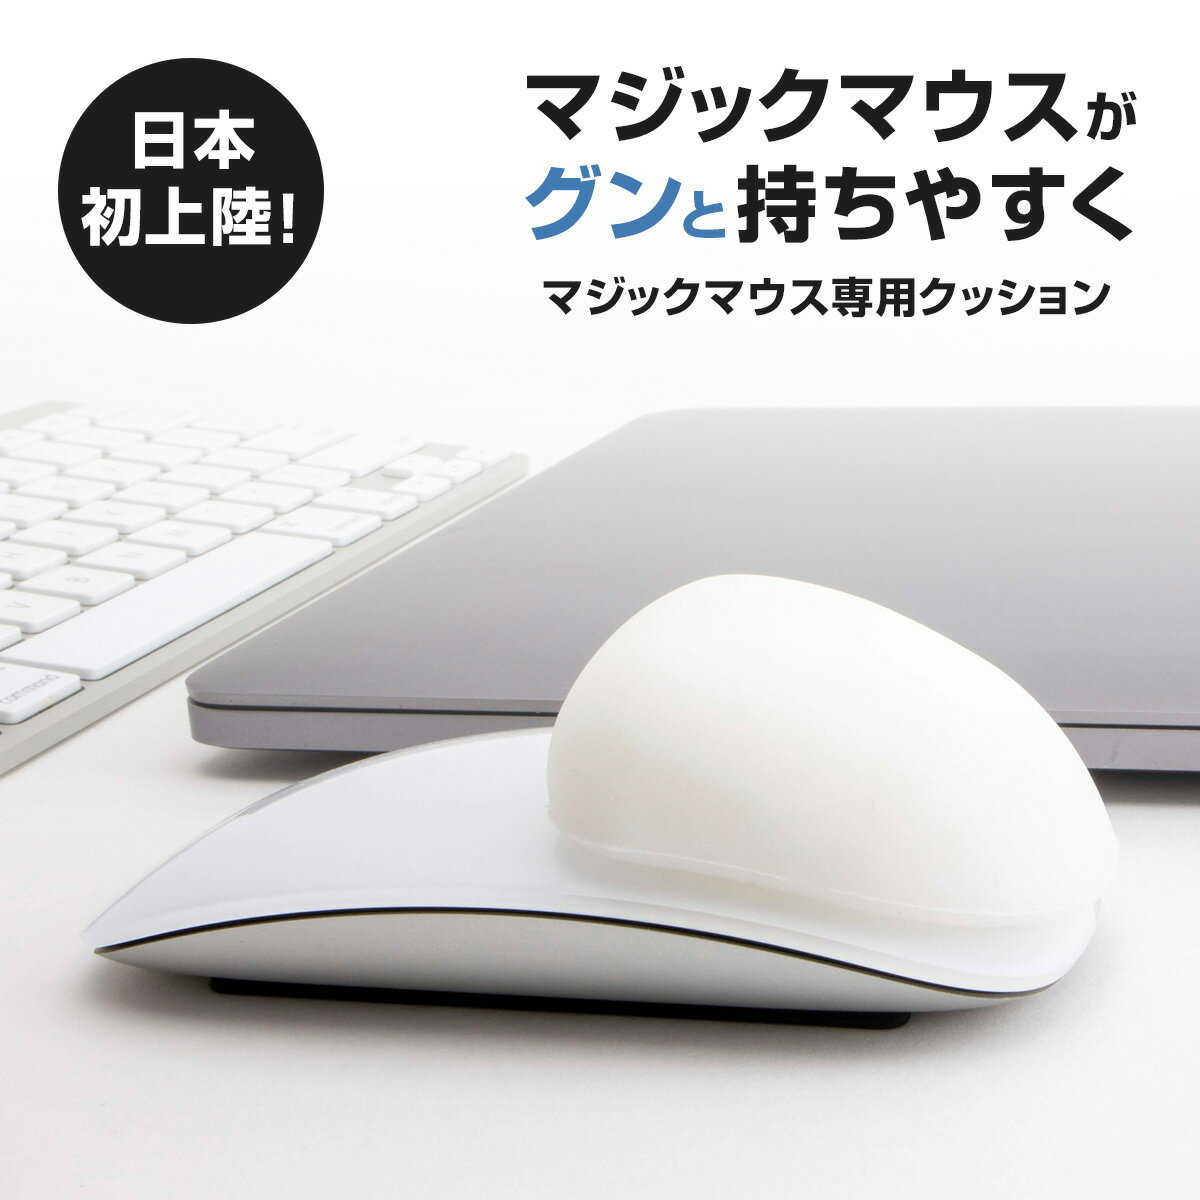 Apple Magic Mouse アップル マジックマウス専用クッション MMFIXED 持ちやすさ 握り心地 快適性向上 疲れない 操作性向上 マウスパッド パームレスト